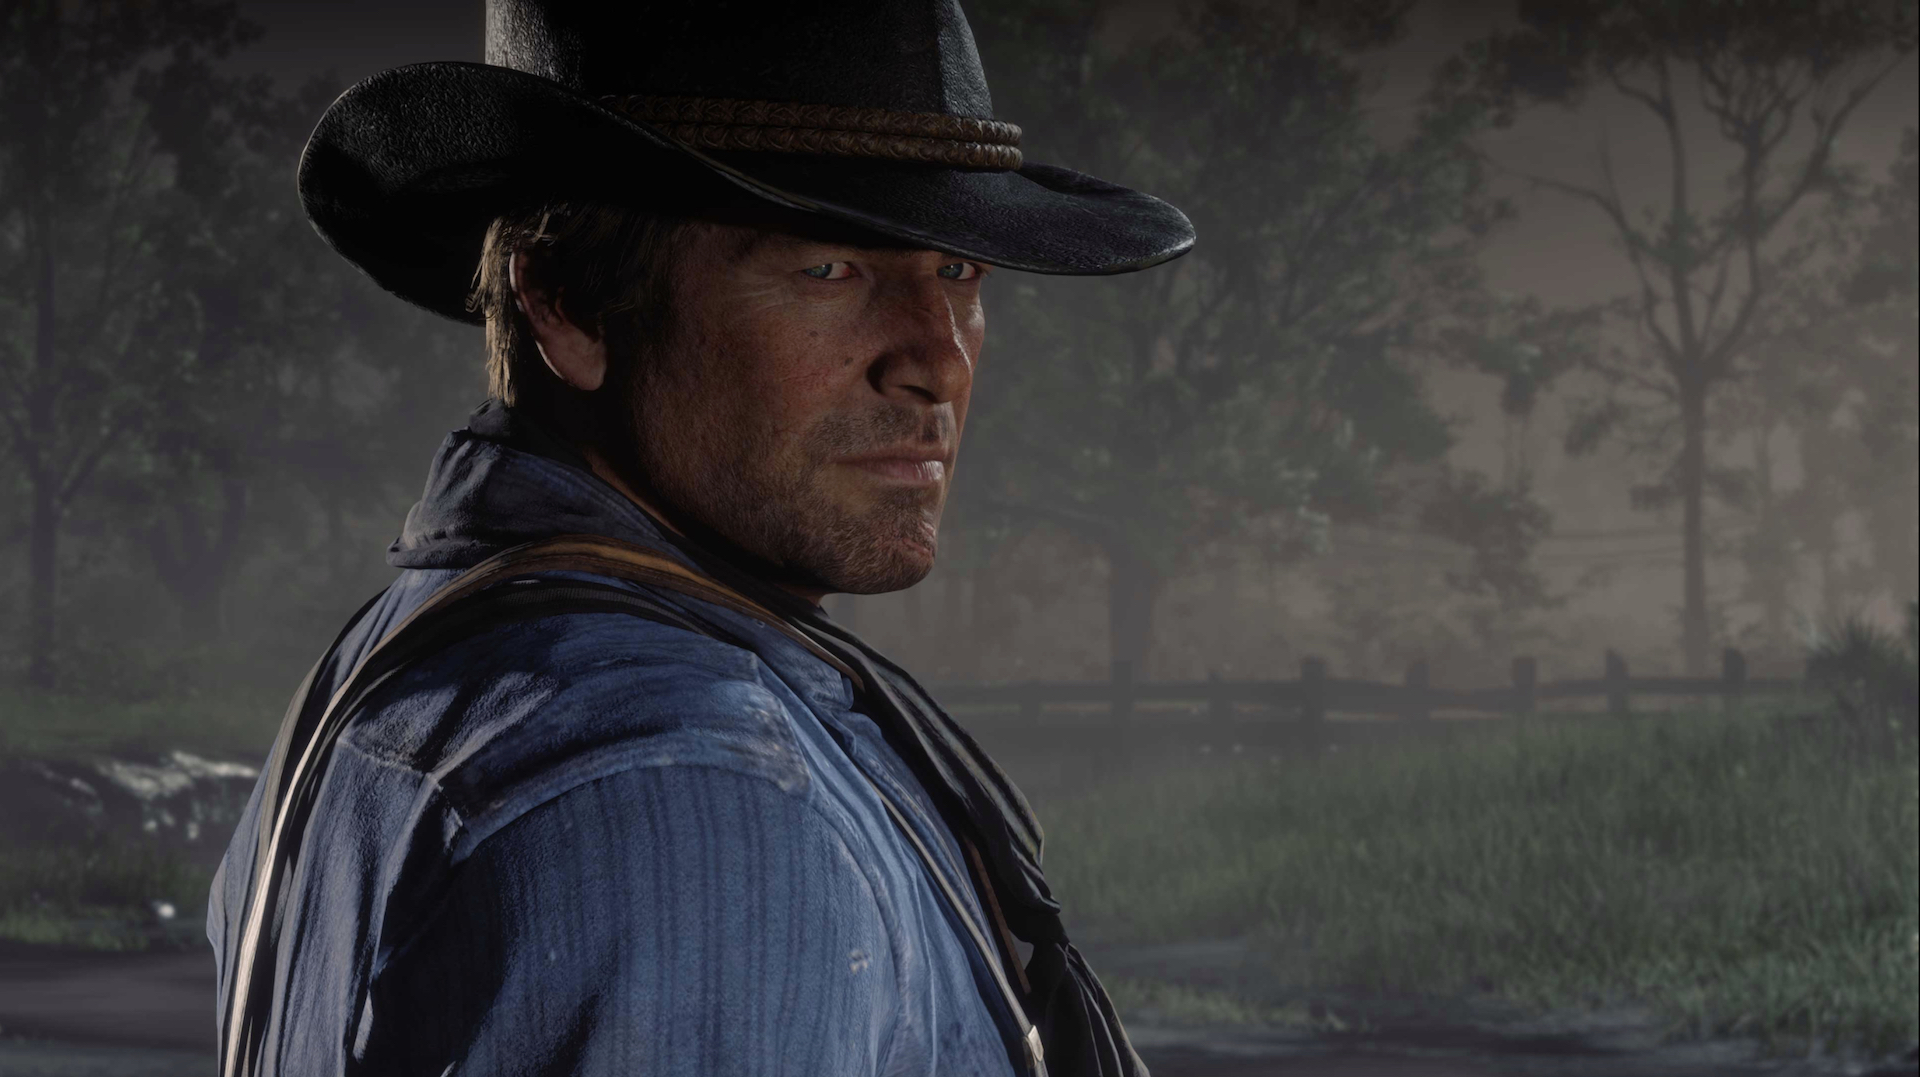 بازی  Red Dead Redemption 2 بیش از ۴۵ میلیون نسخه در سراسر جهان به فروش رسانده است